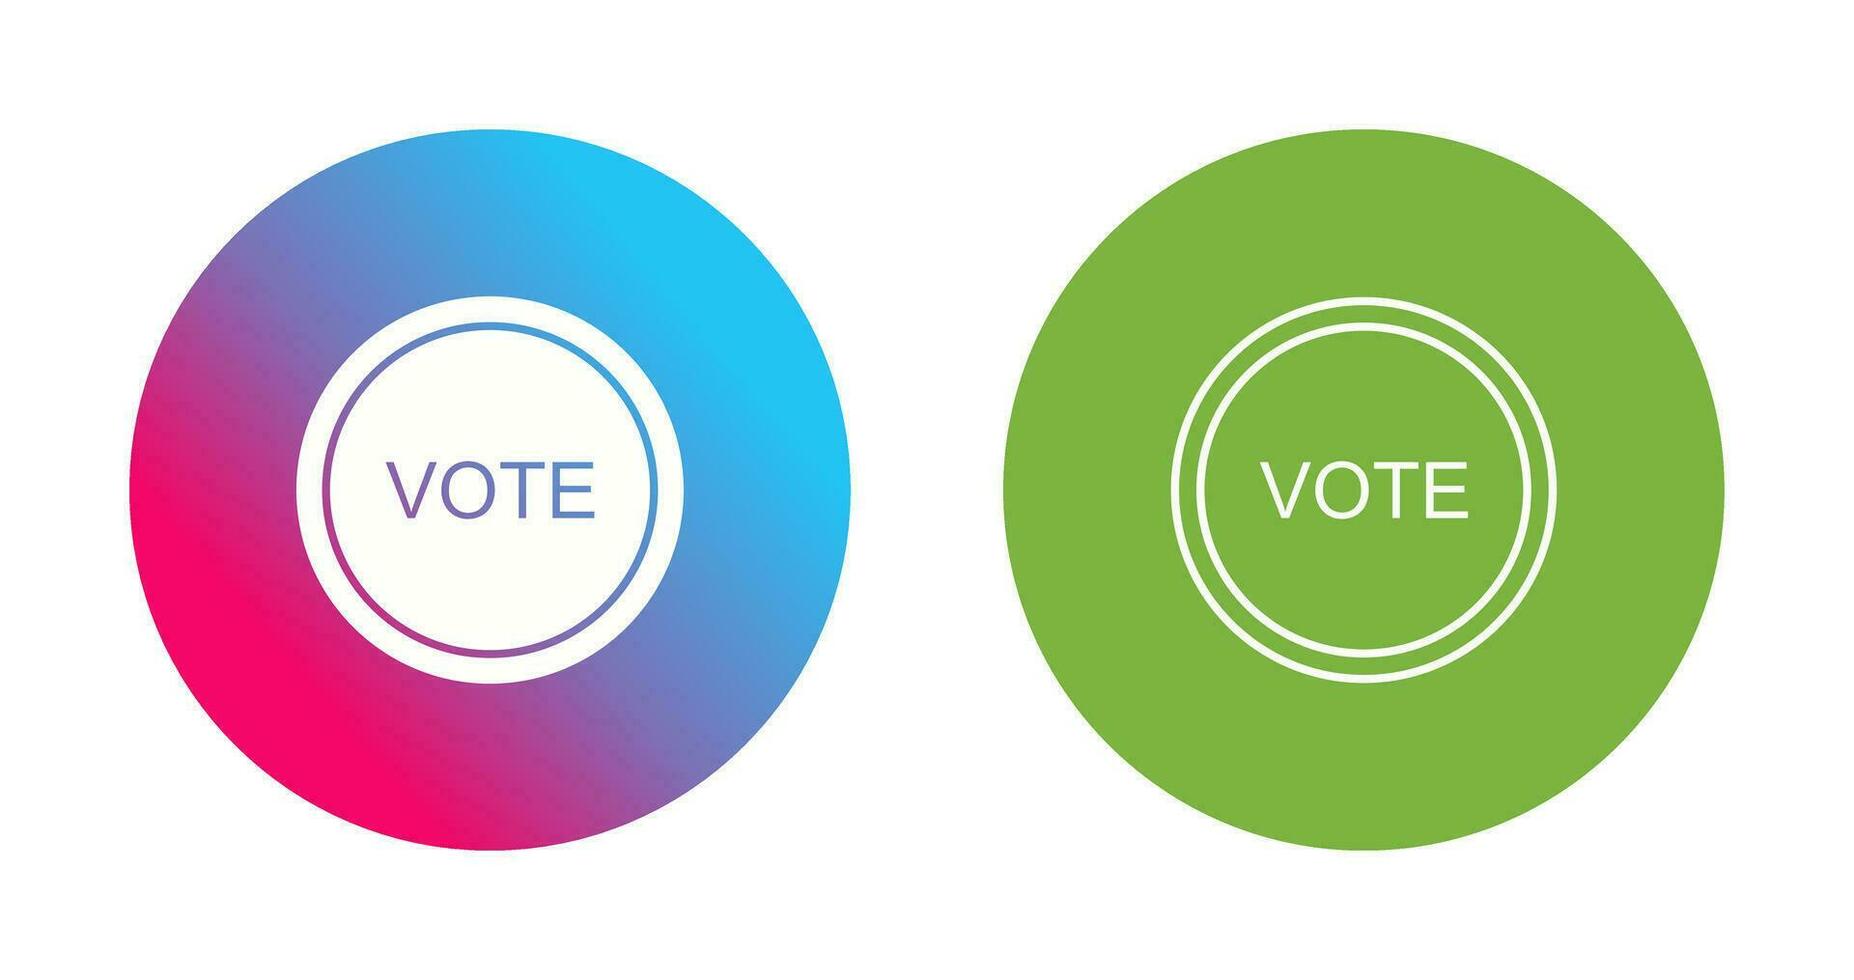 votazione collegamento vettore icona